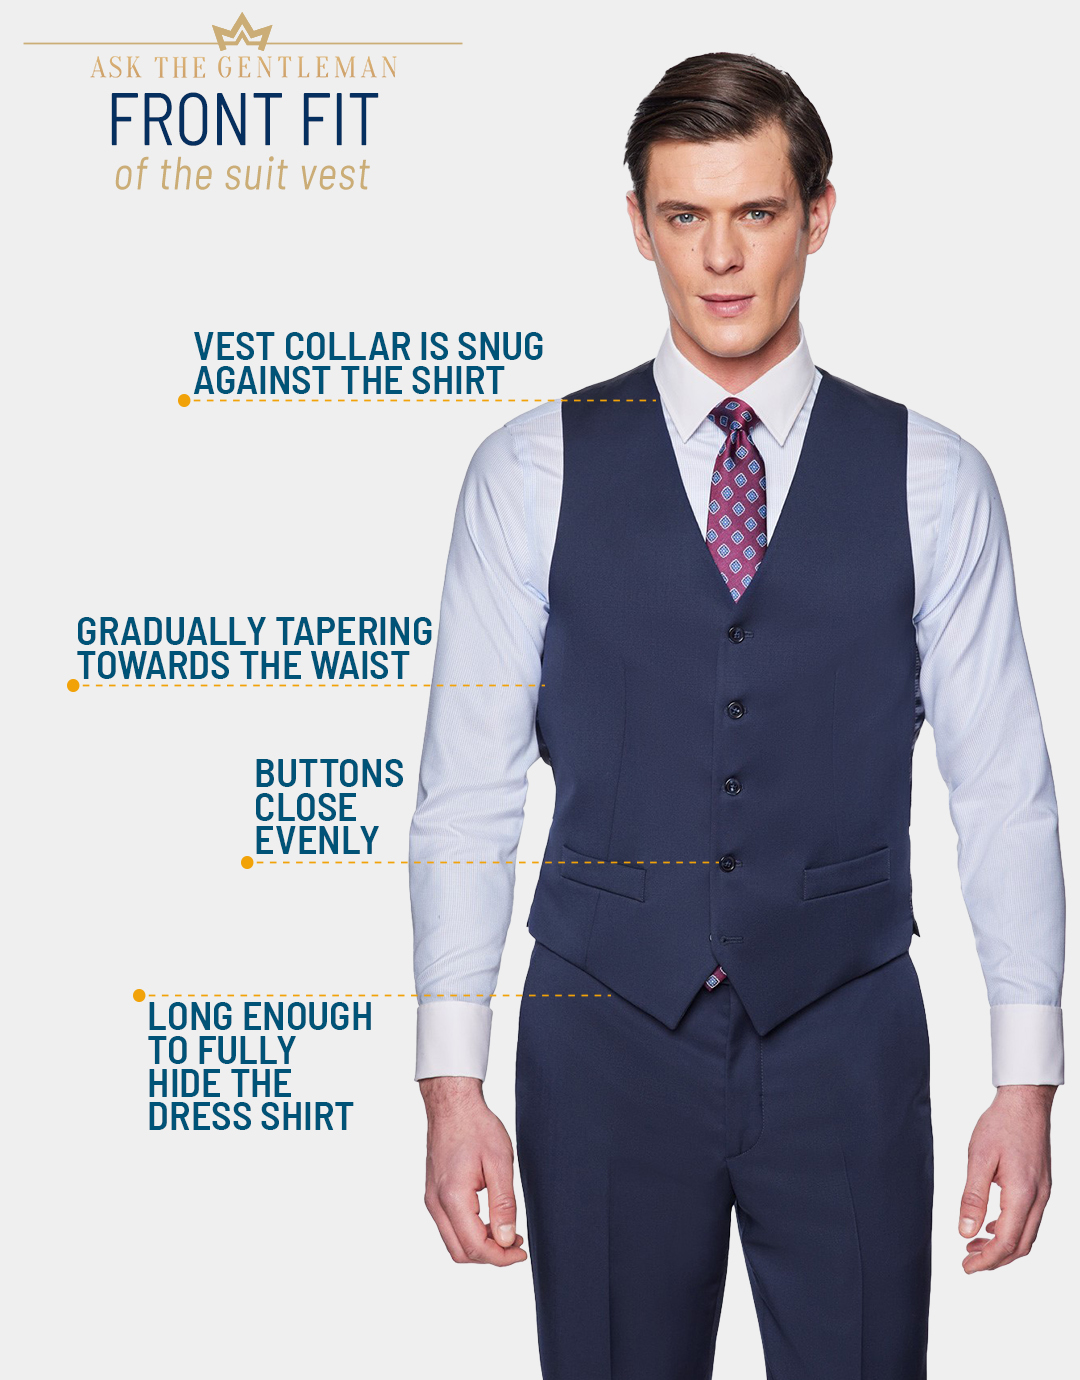 How should the suit vest front fit